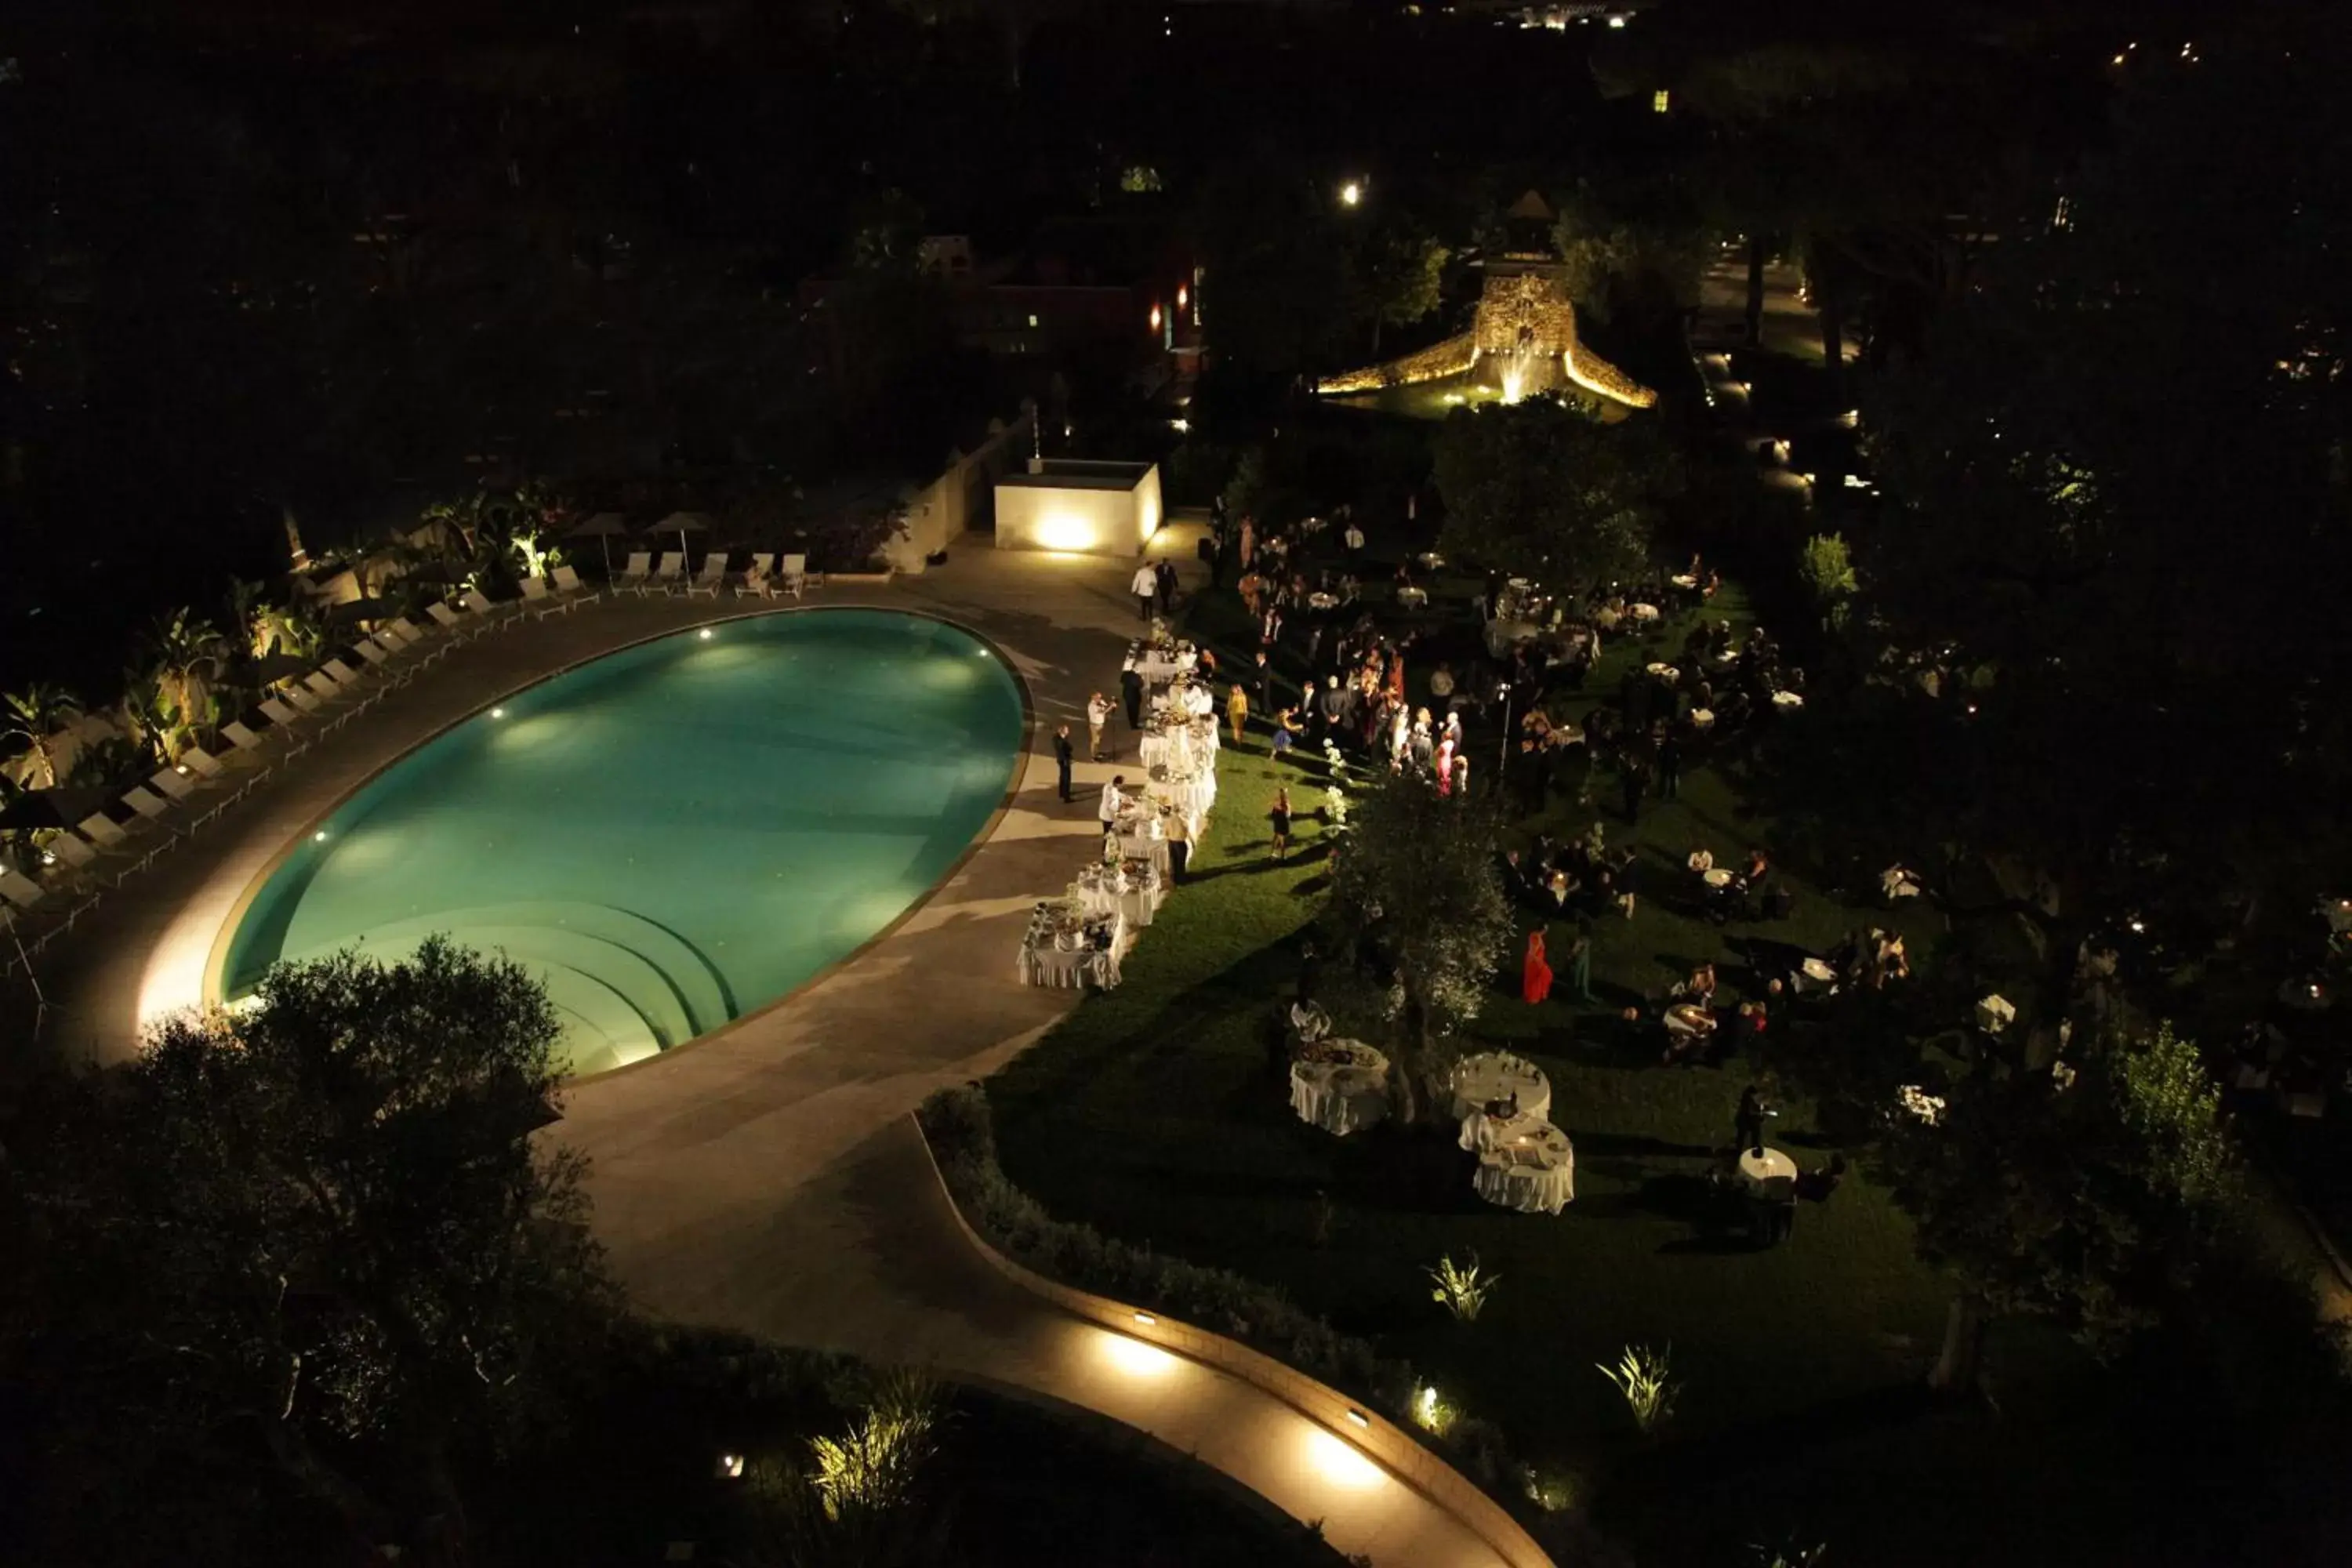 Night, Pool View in Mercure Villa Romanazzi Carducci Bari